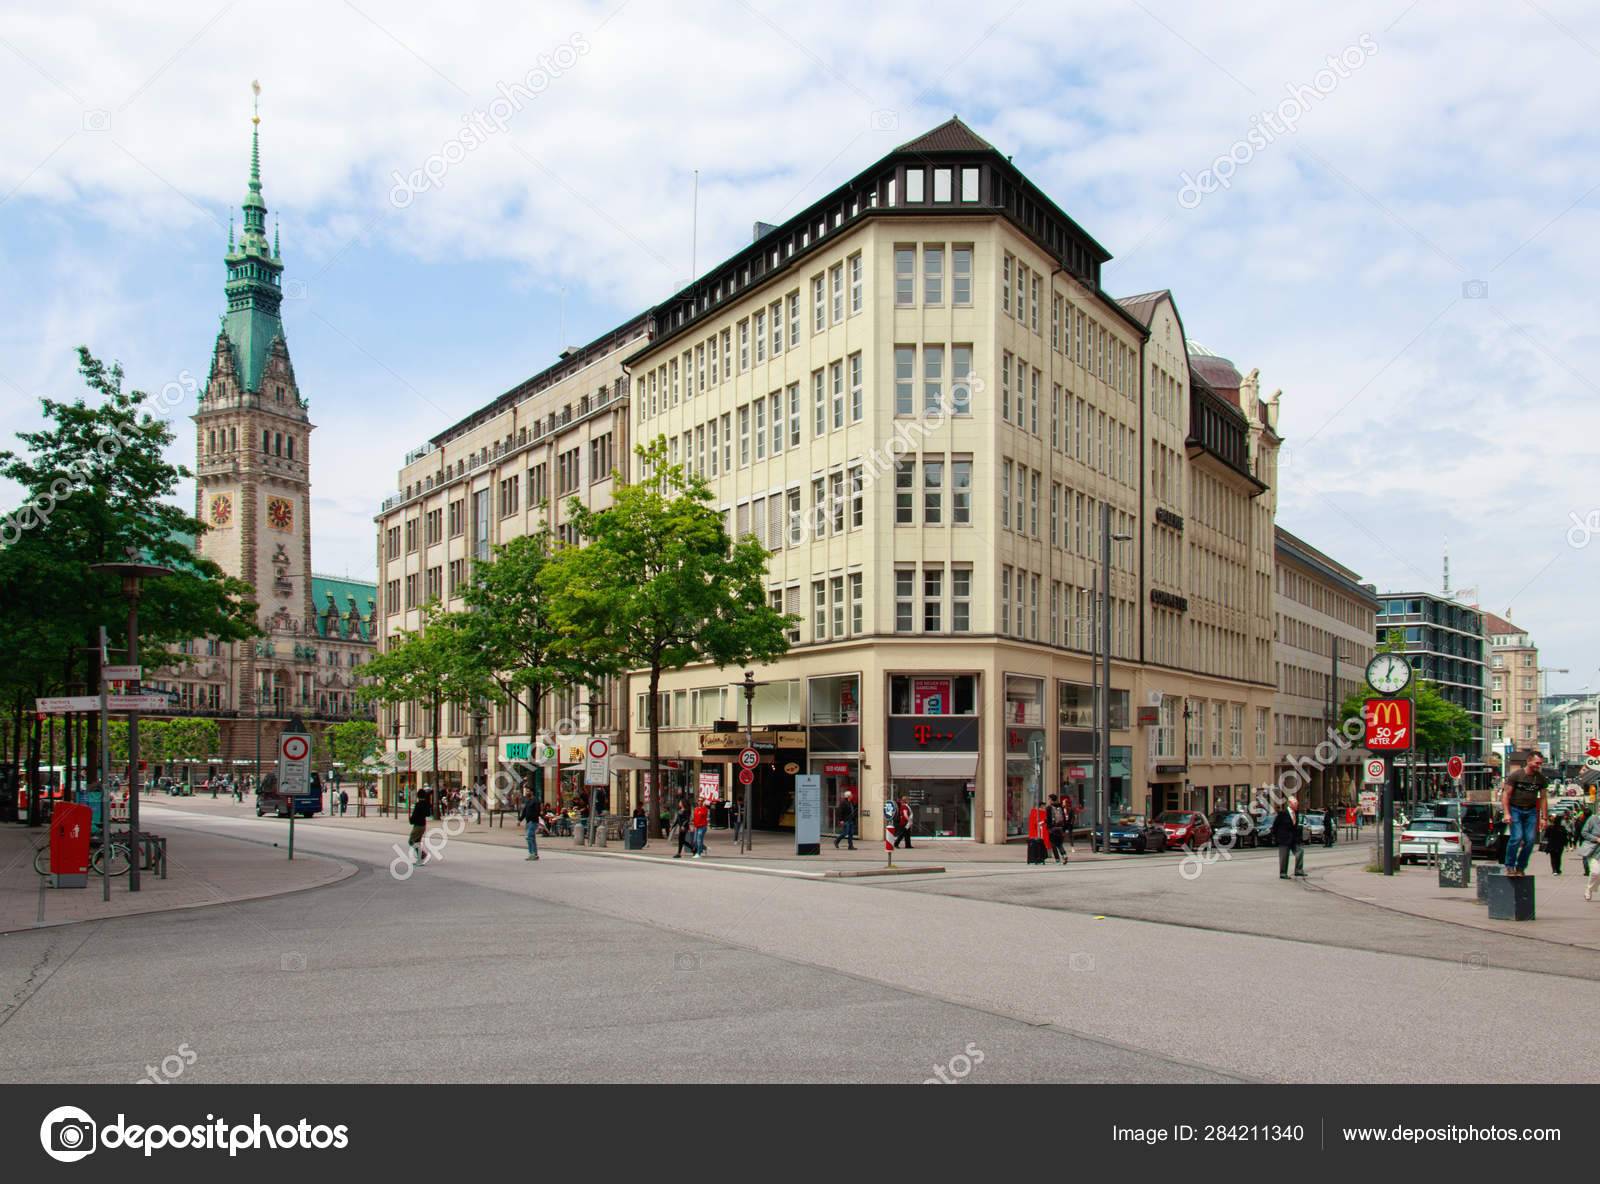 Где купить редкие сувениры и одежду в гамбурге - ваш личный путеводитель по городам европы